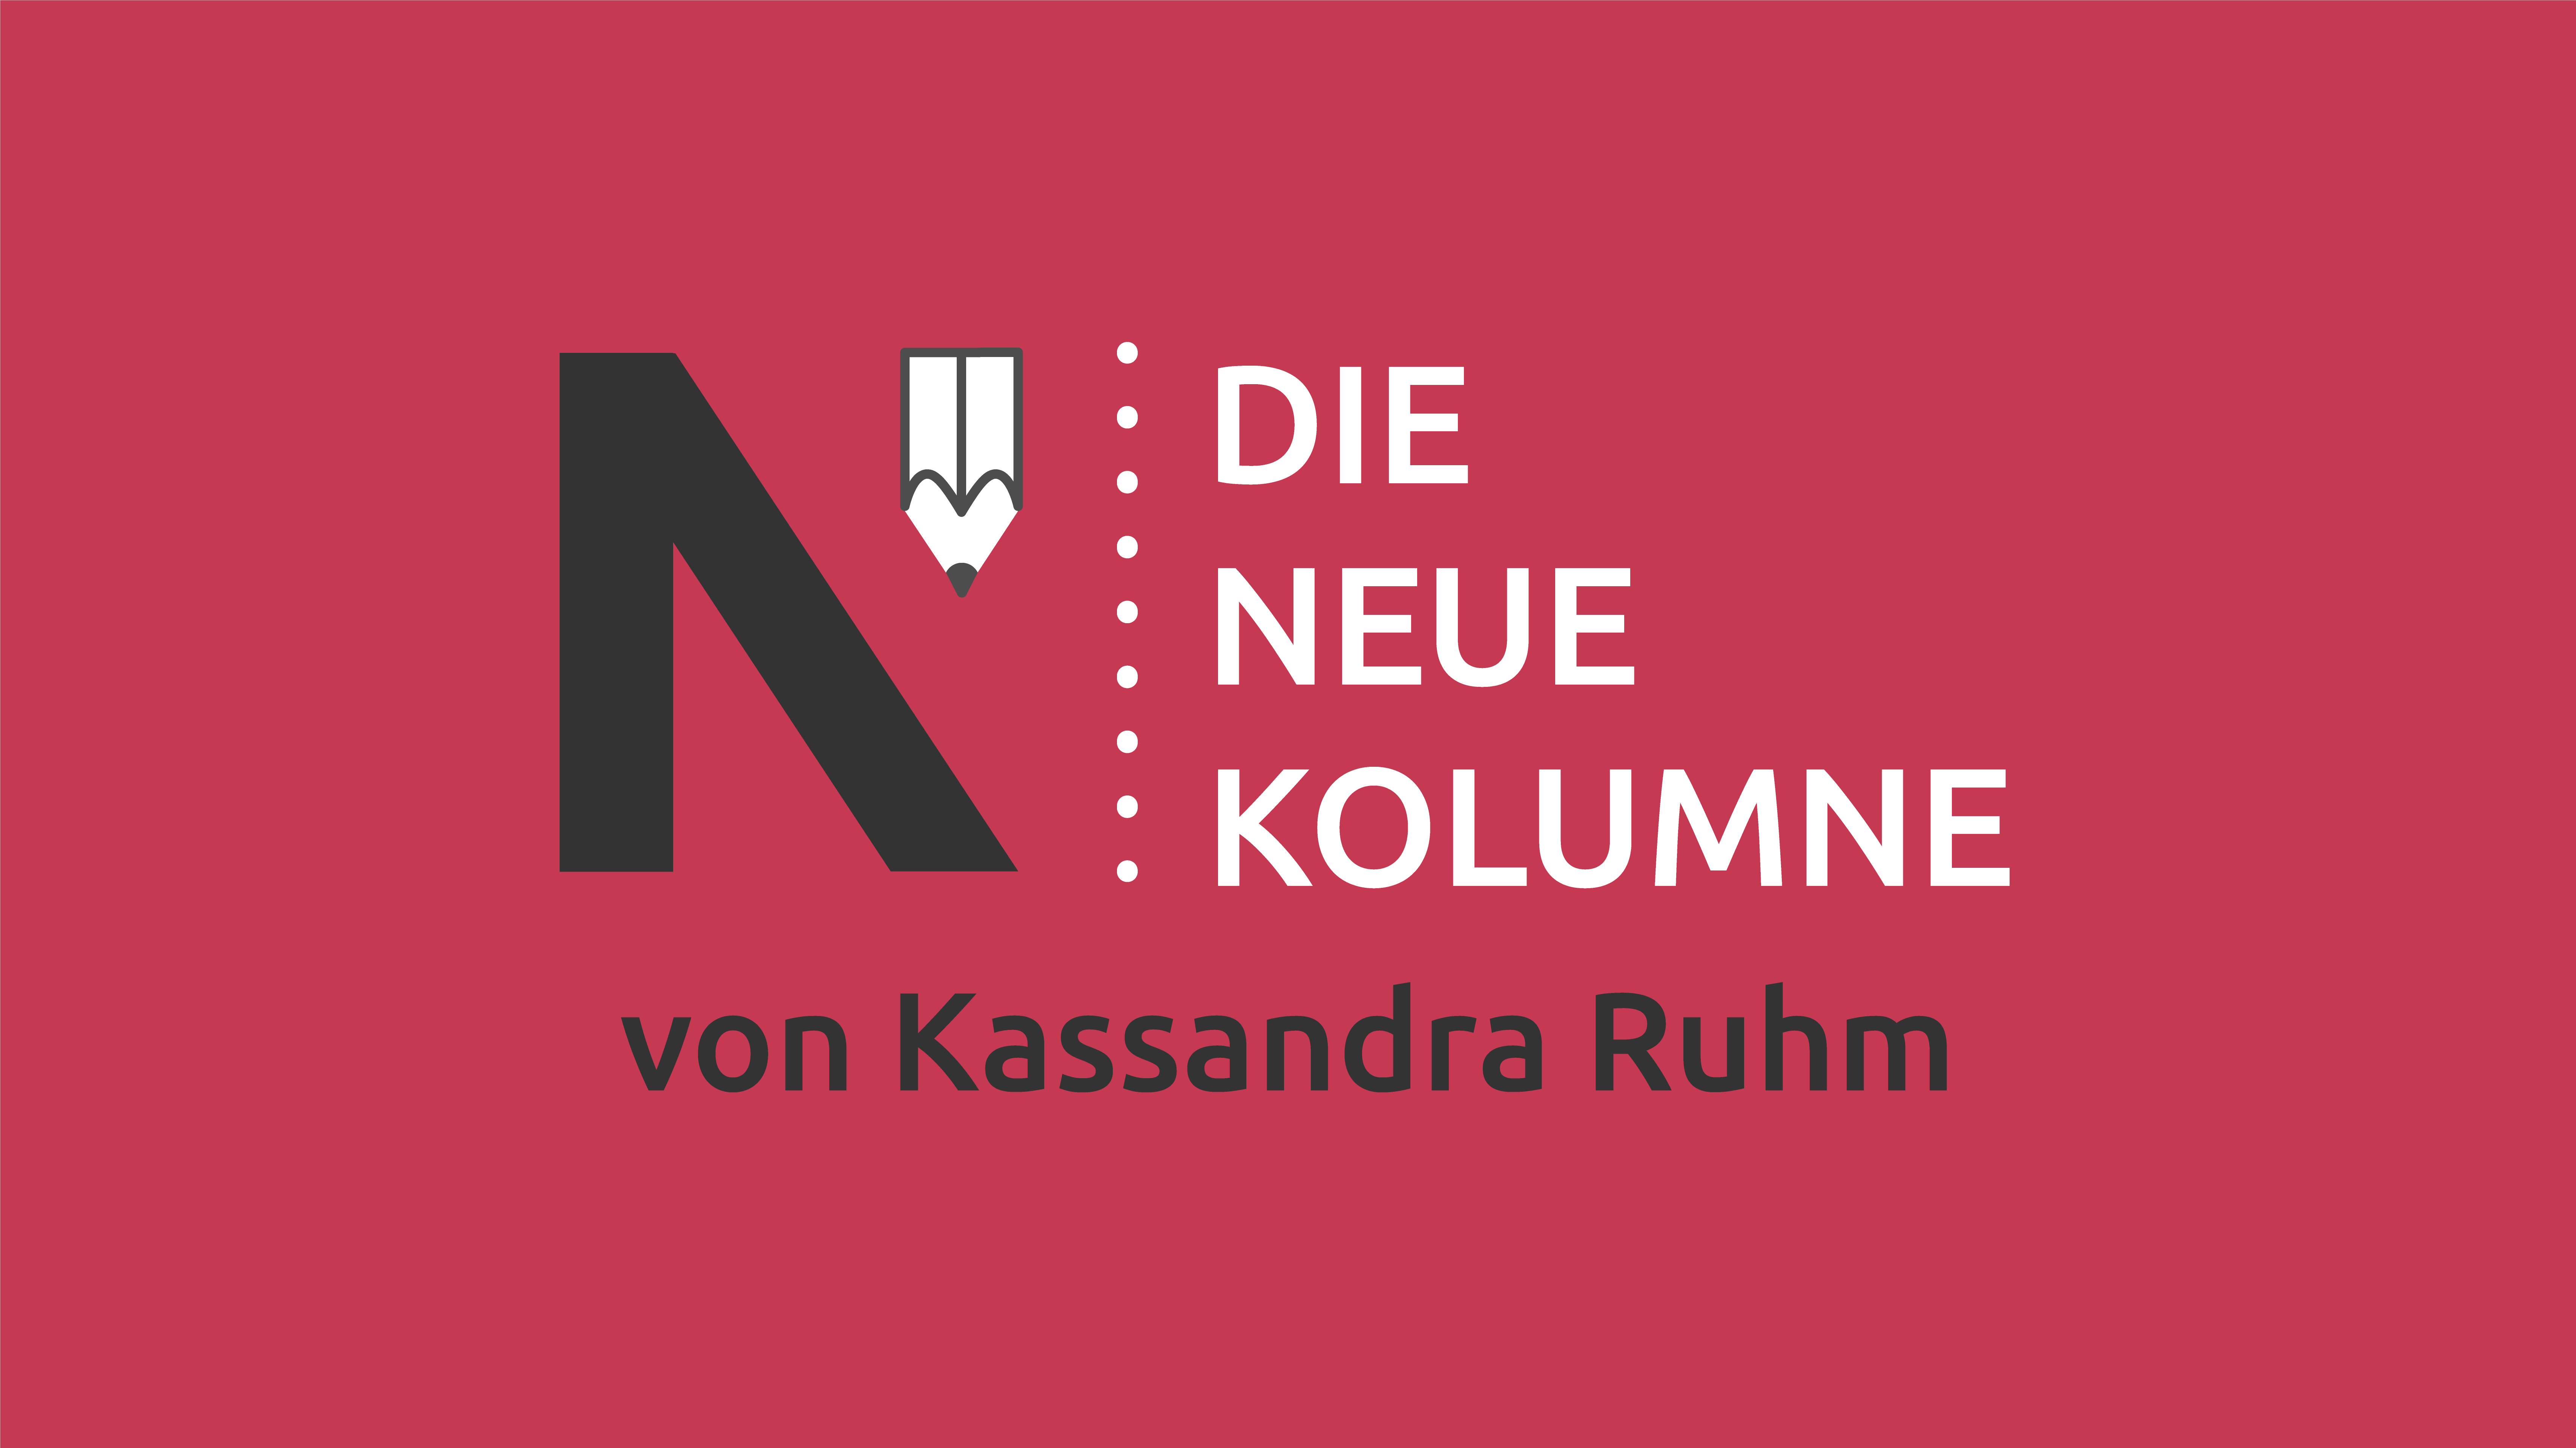 Das Logo von Die Neue Norm auf pinkem Grund. Rechts davon steht: die Neue Kolumne. Unten steht: von Kassandra Ruhm.